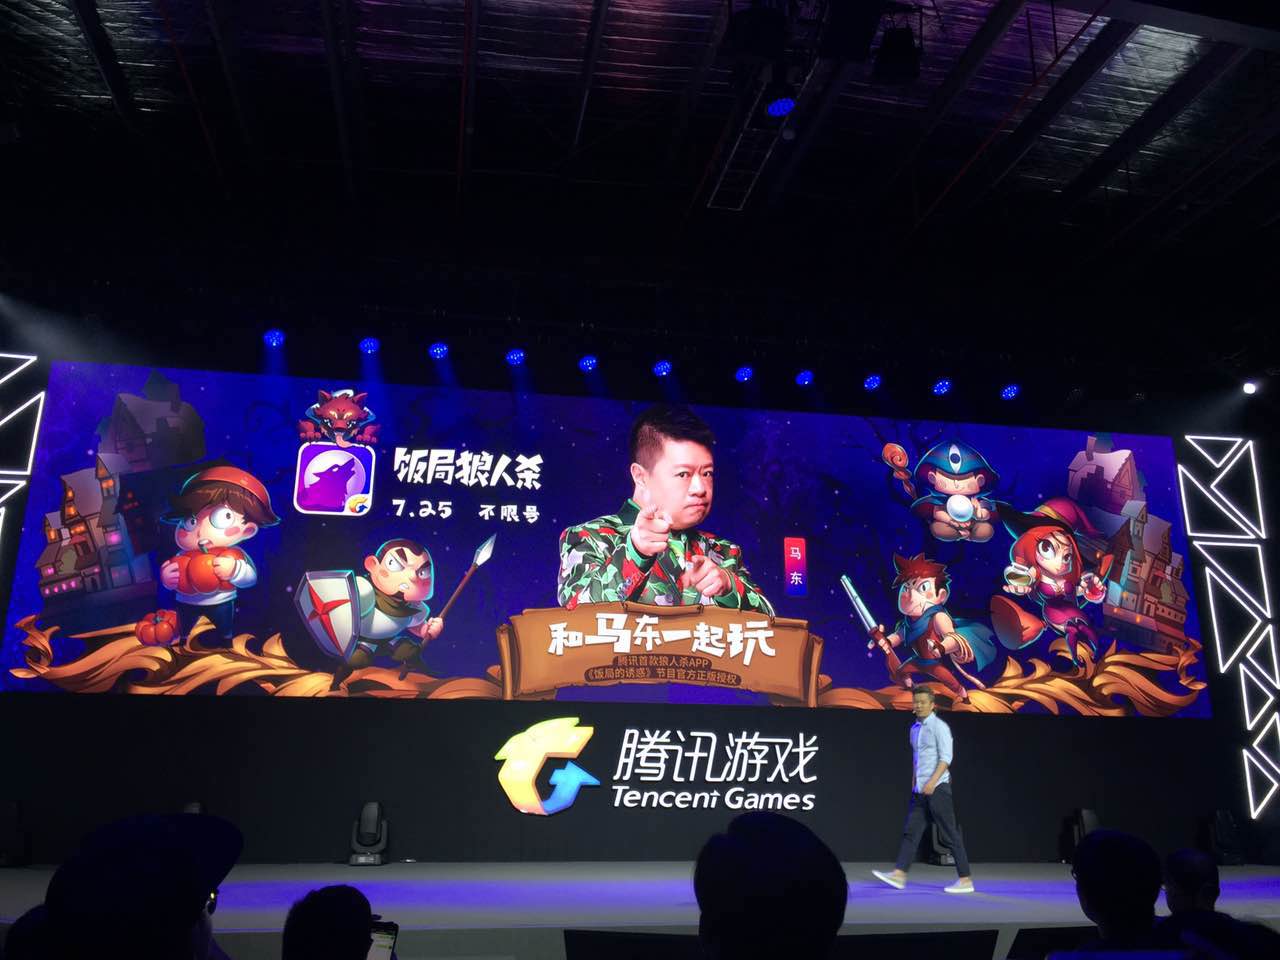 腾讯发布9款最新精品游戏 《纪念碑谷2》中国区iOS端下载量接近200万